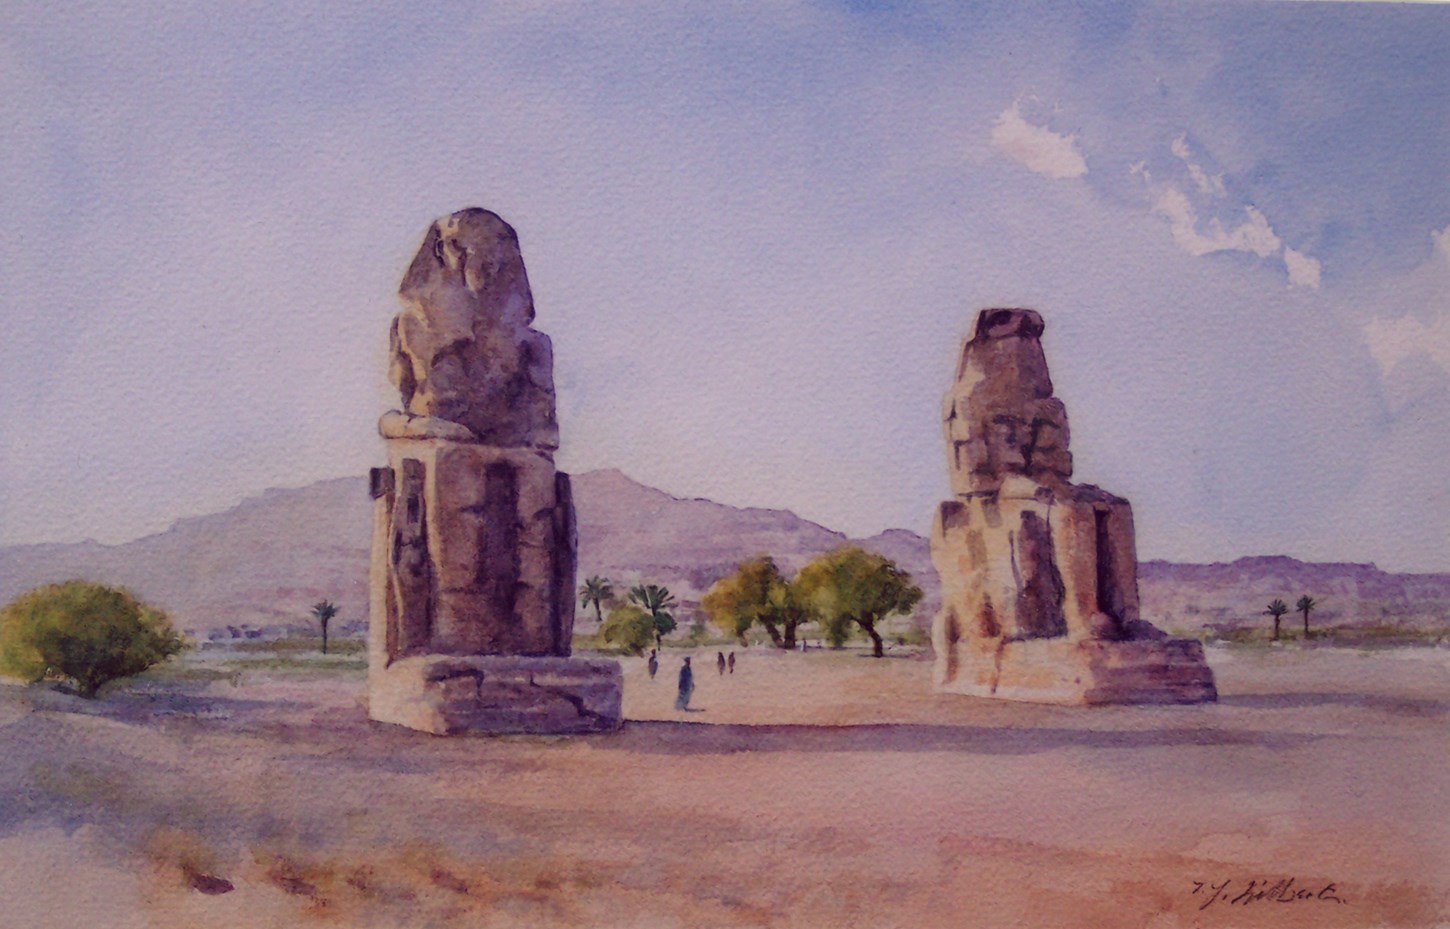 The Colossi of Memnon, Egypt